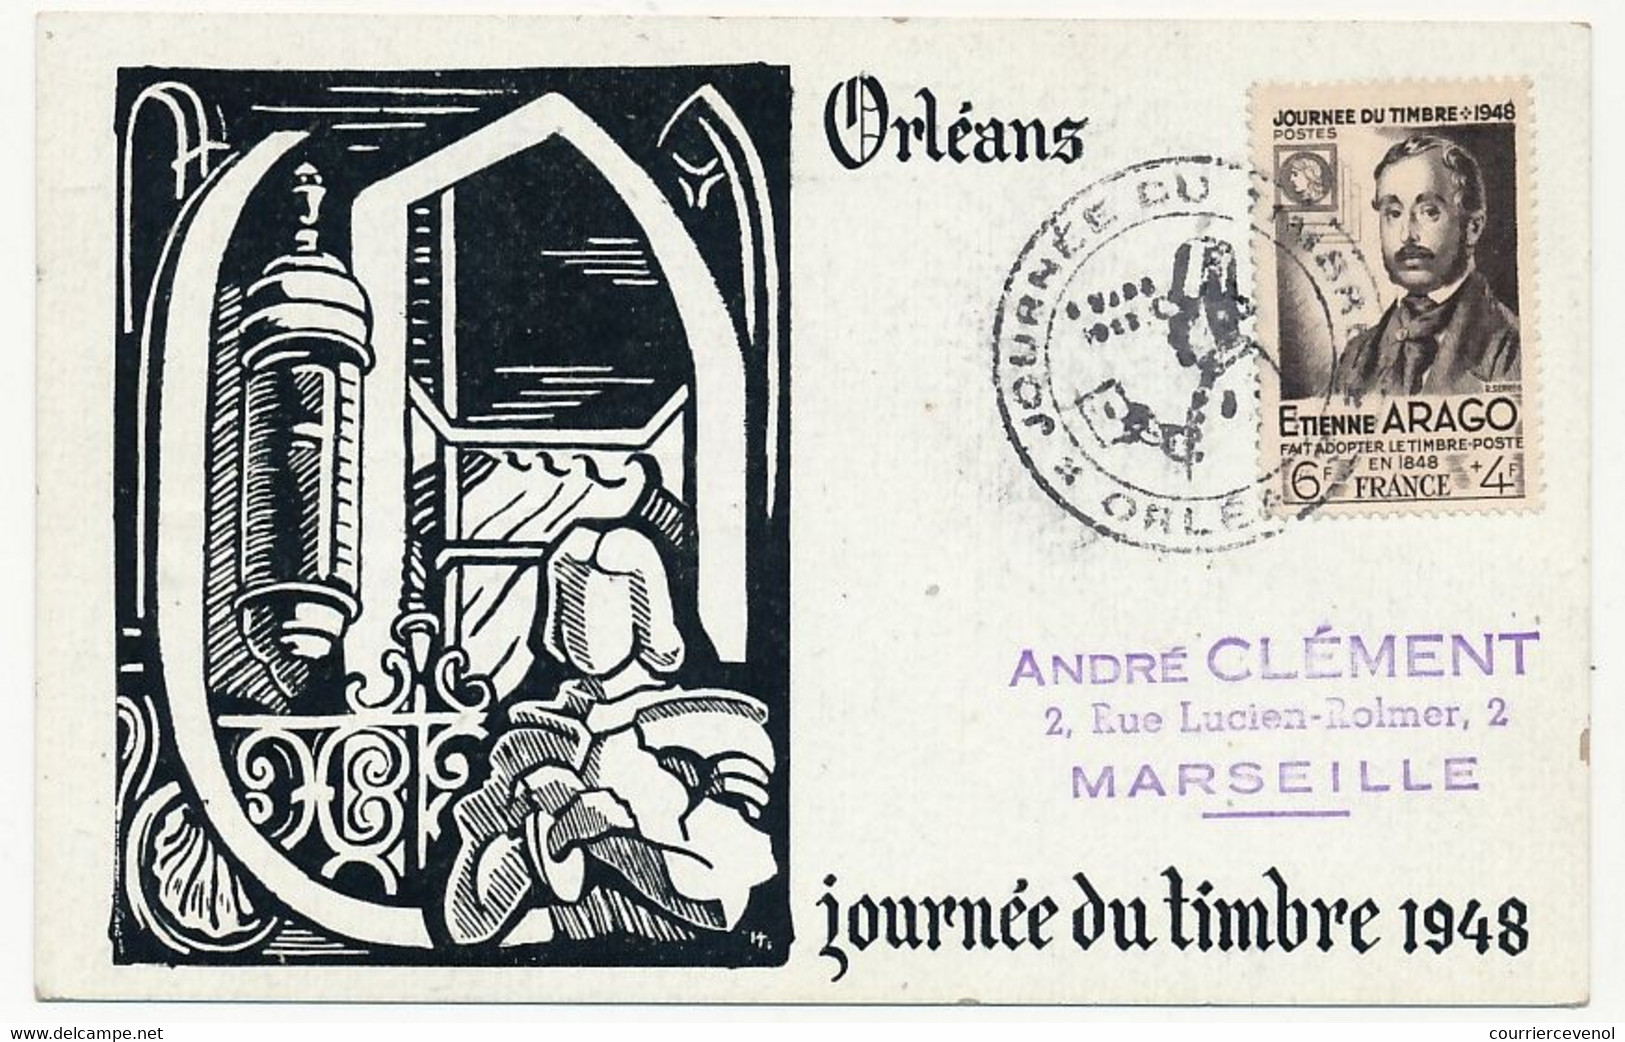 FRANCE => Carte Locale "Journée Du Timbre" 1948 - Timbre 6F + 4F Etienne Arago - ORLEANS 8.3.1948 - Journée Du Timbre